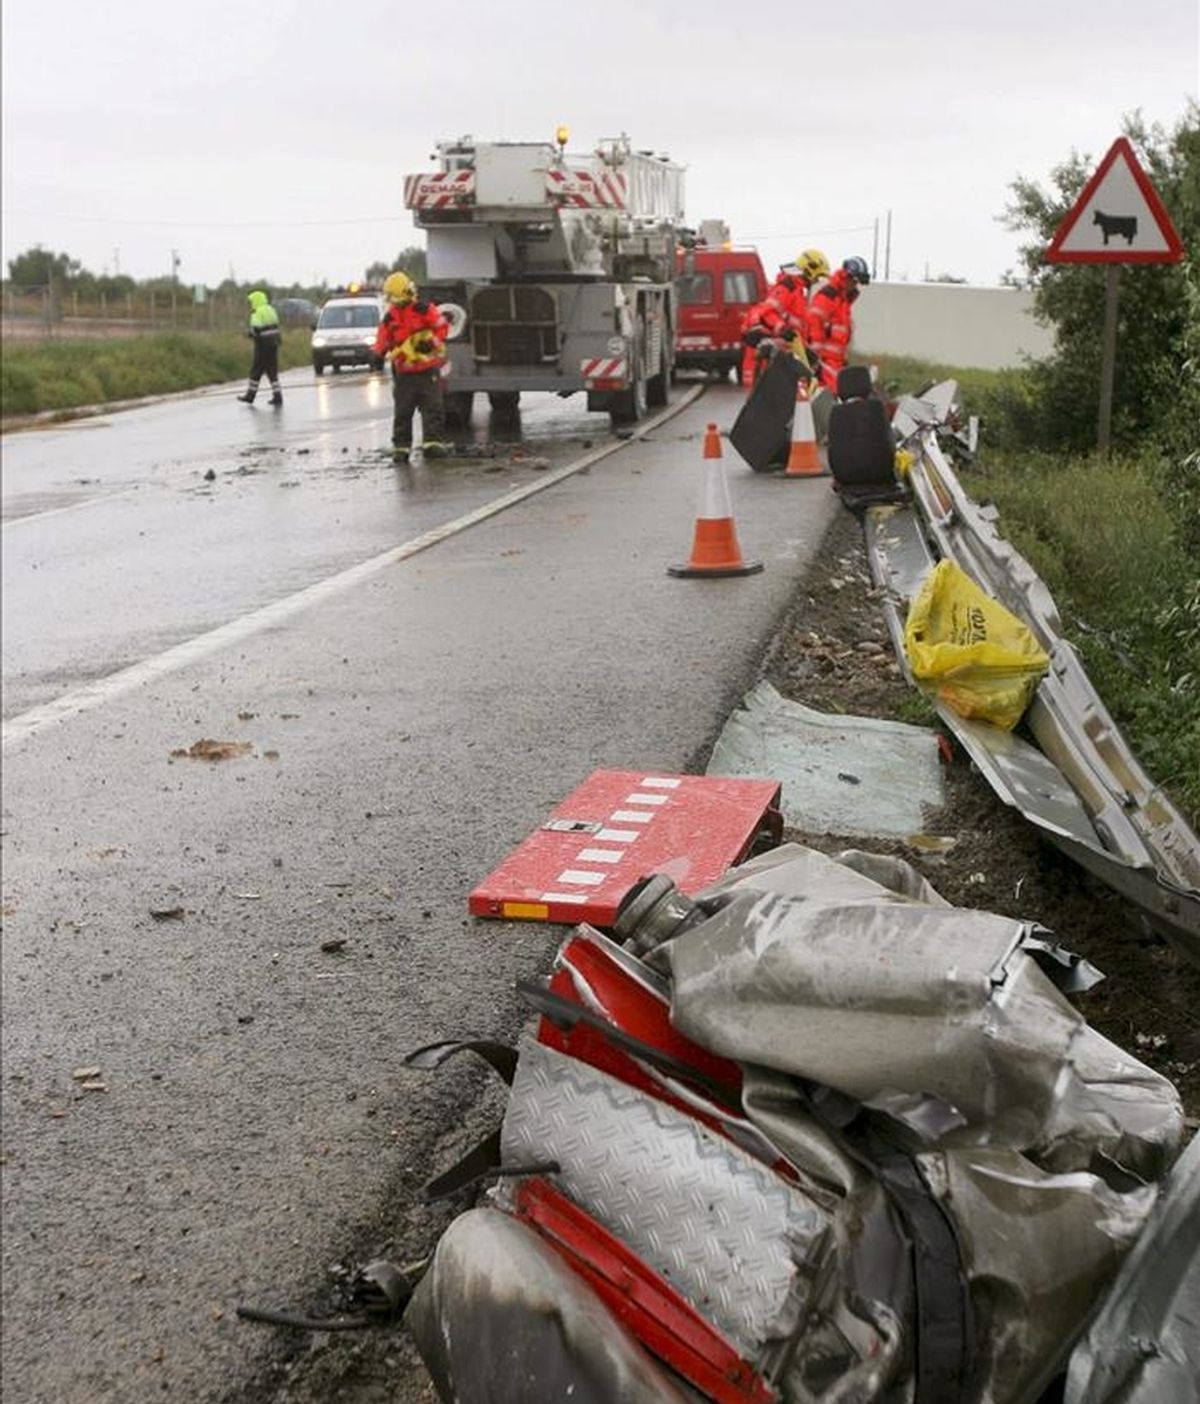 - Restos en la calzada de un camión de bomberos, uno de los tres vehículos implicados en un accidente múltiple en la carretera N-340, a la altura de Amposta (Tarragona) que, aunque sin heridos de gravedad, ha obligado a cerrar la vía. EFE